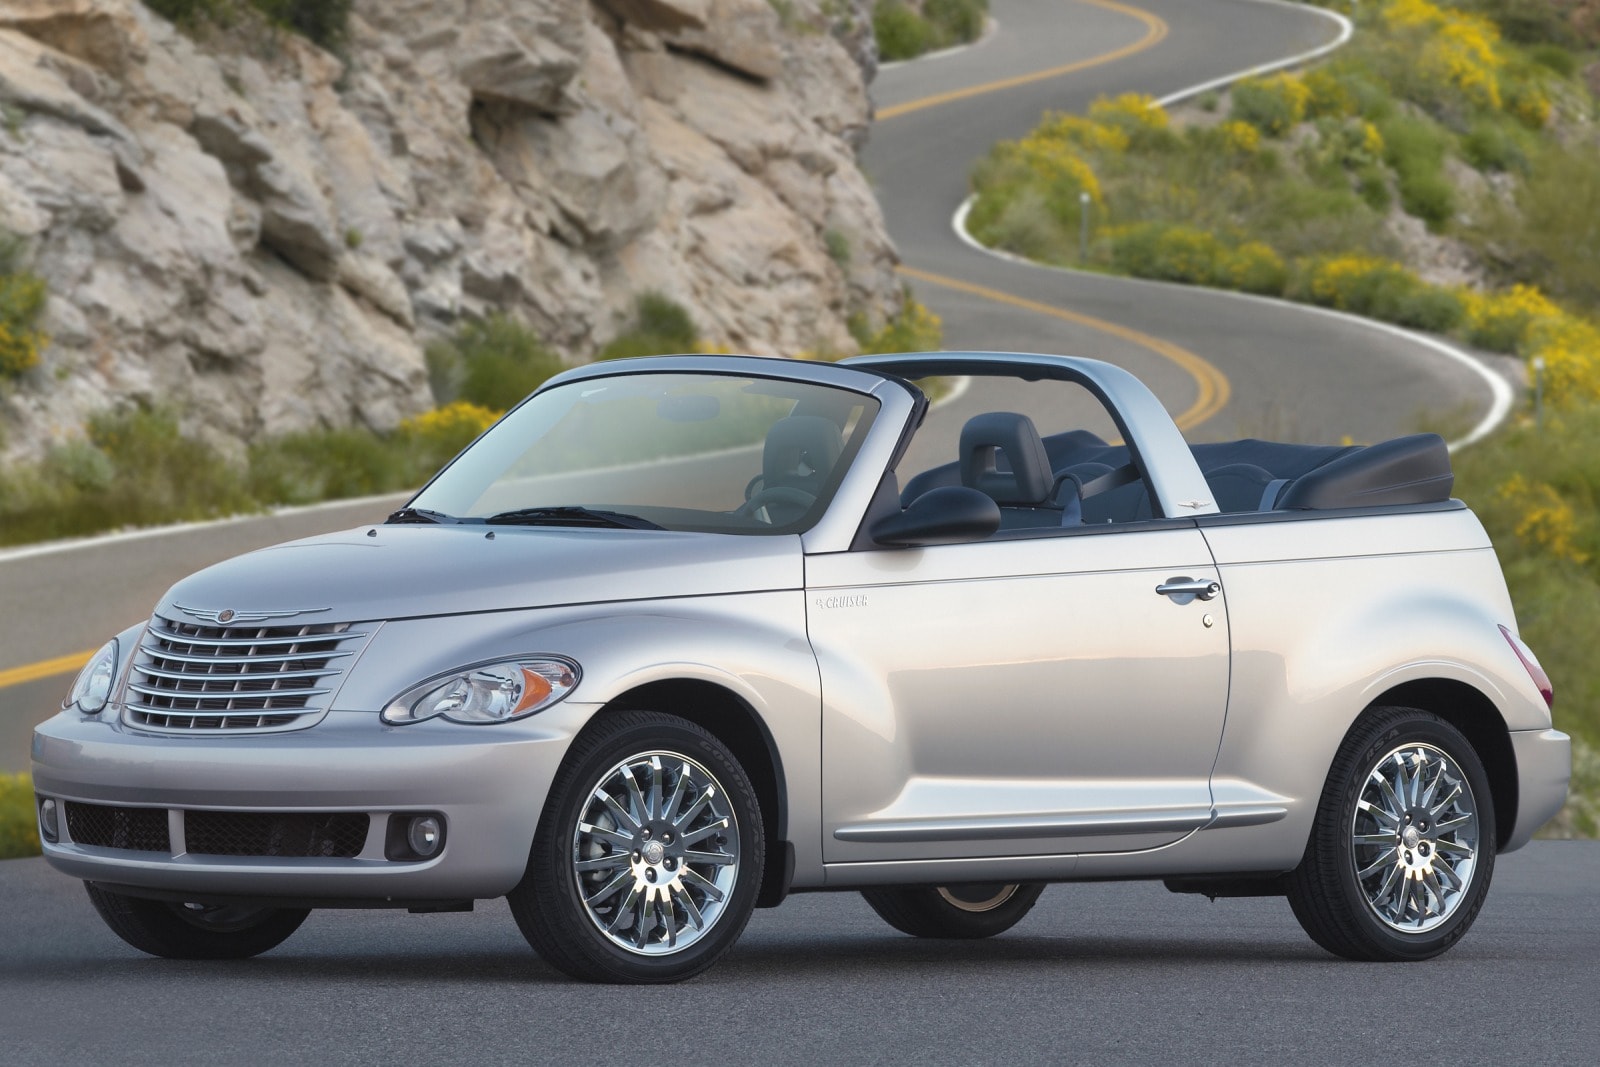 2007 Chrysler PT Cruiser Review & Ratings | Edmunds